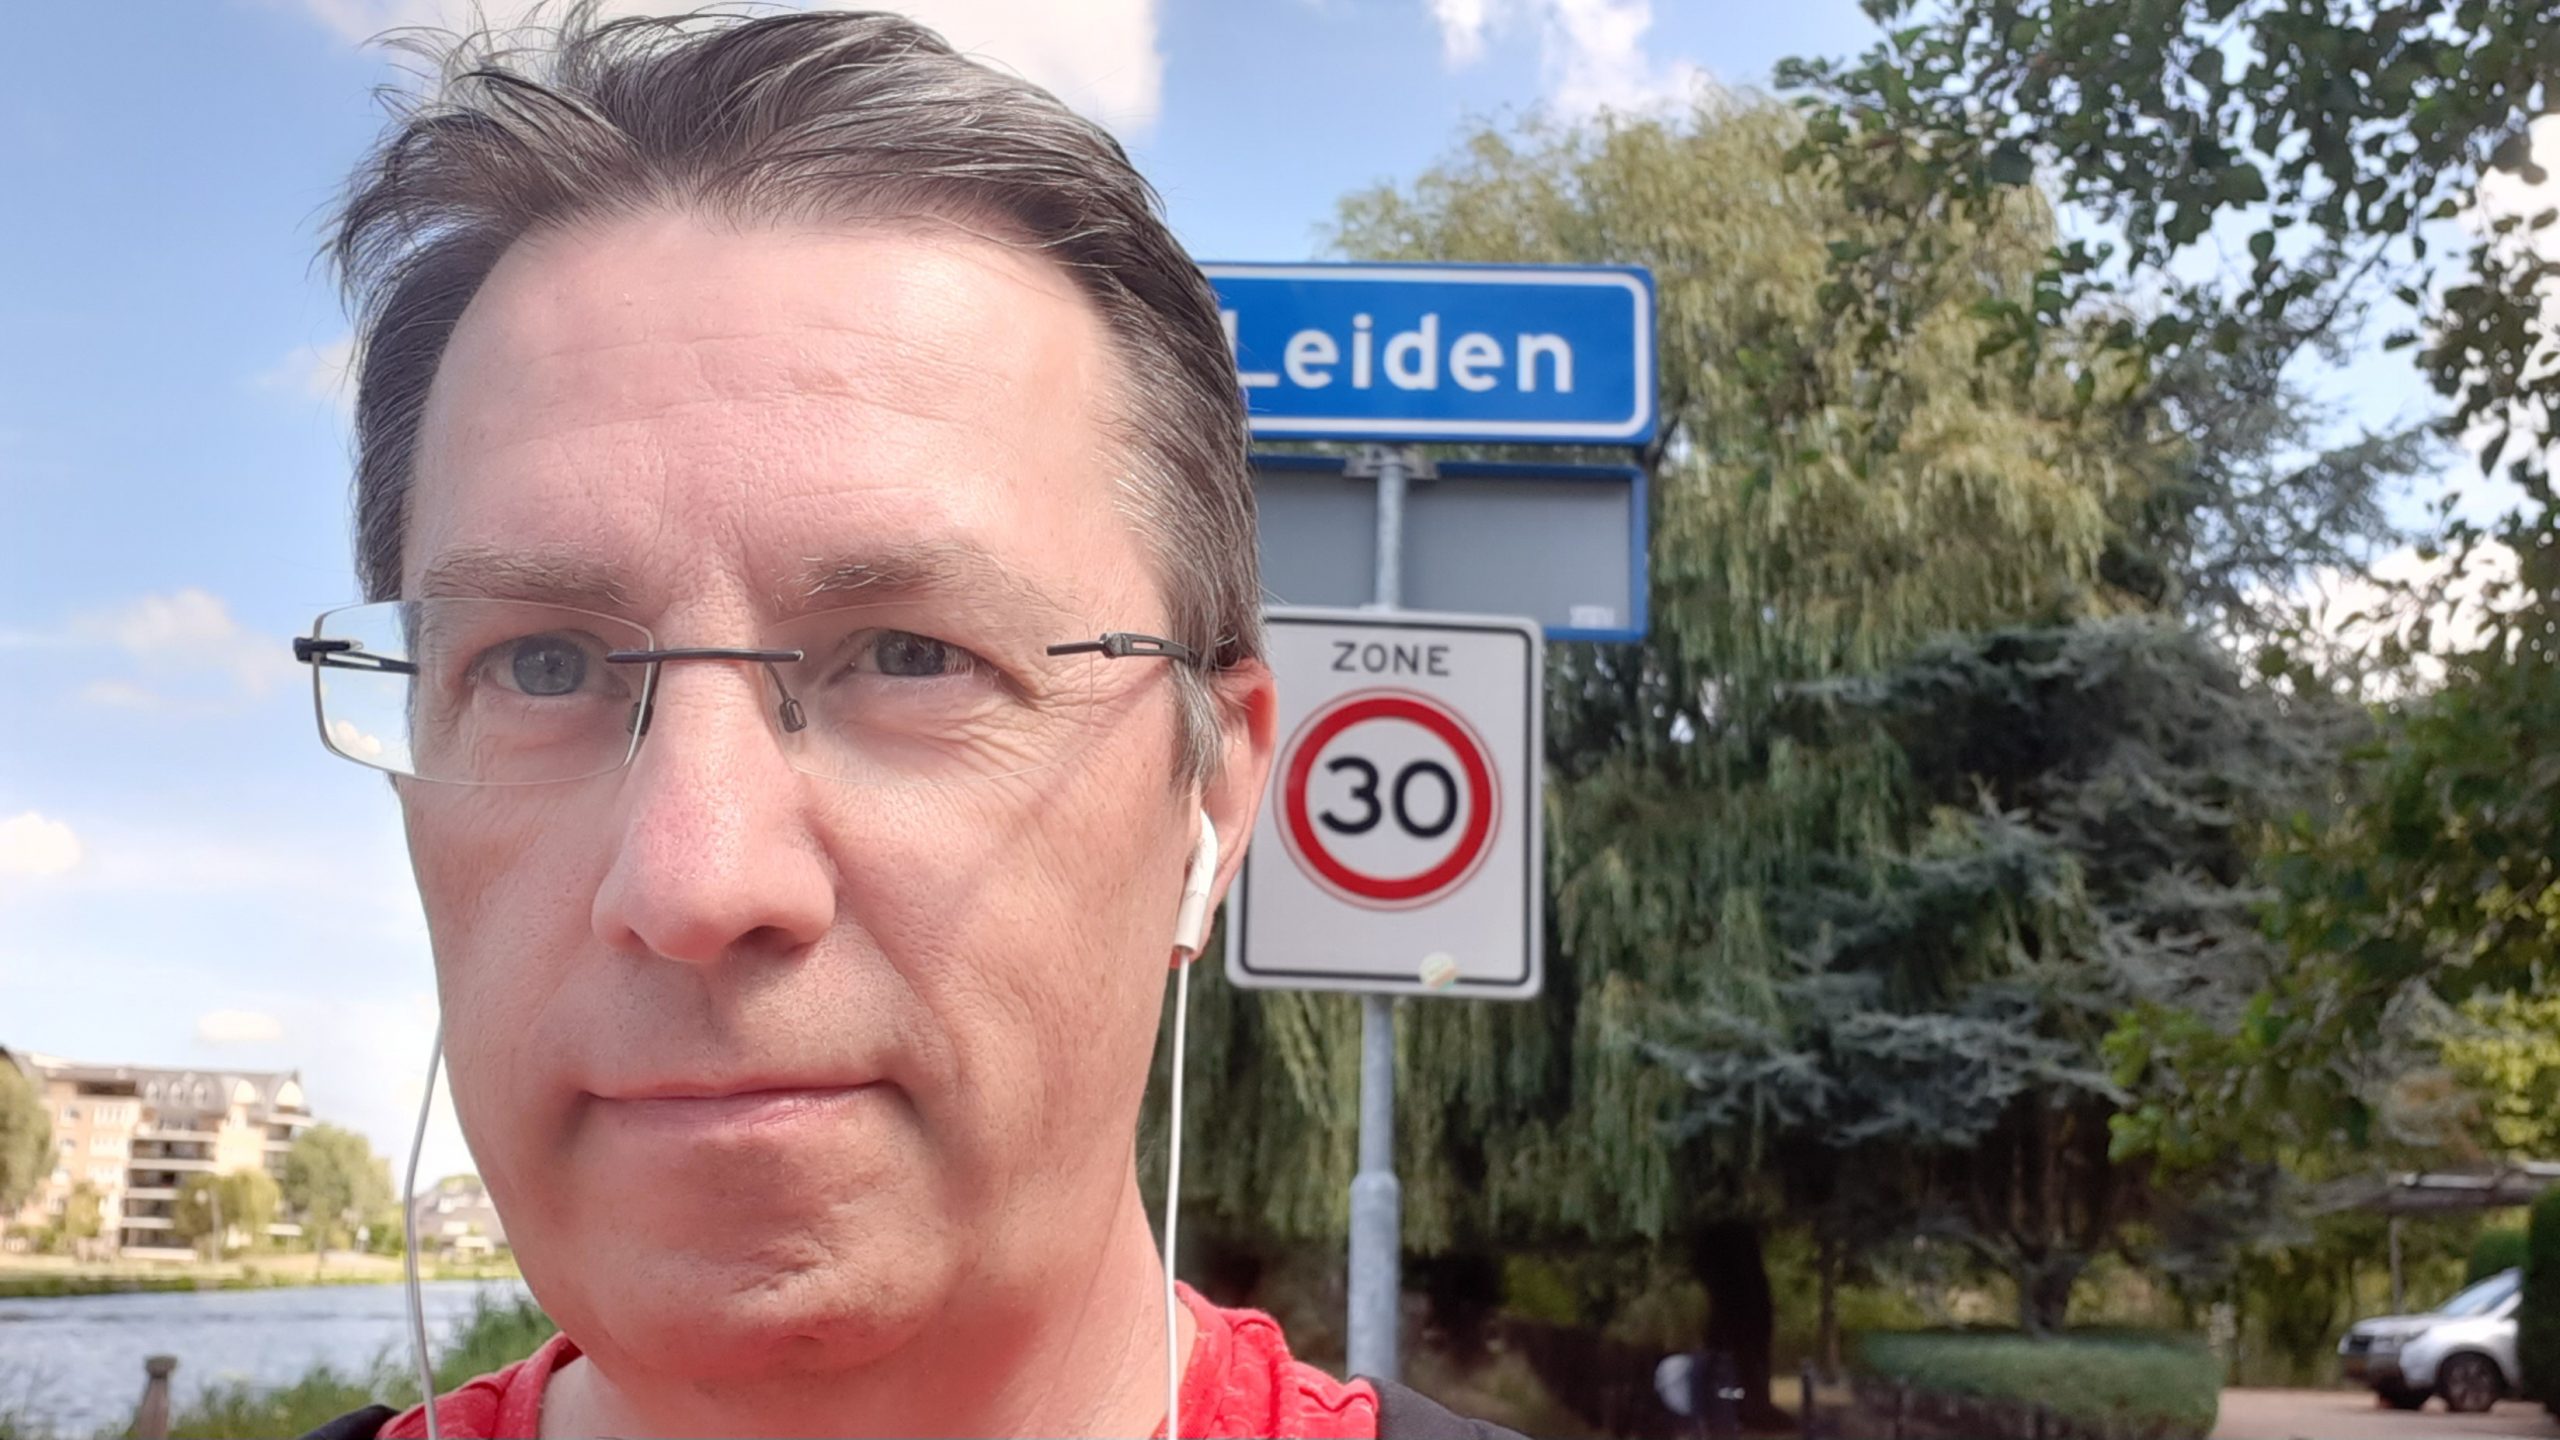 2. Marskramerpad Wassenaar – Leiden: Willem Frederik Hermans (22 km)